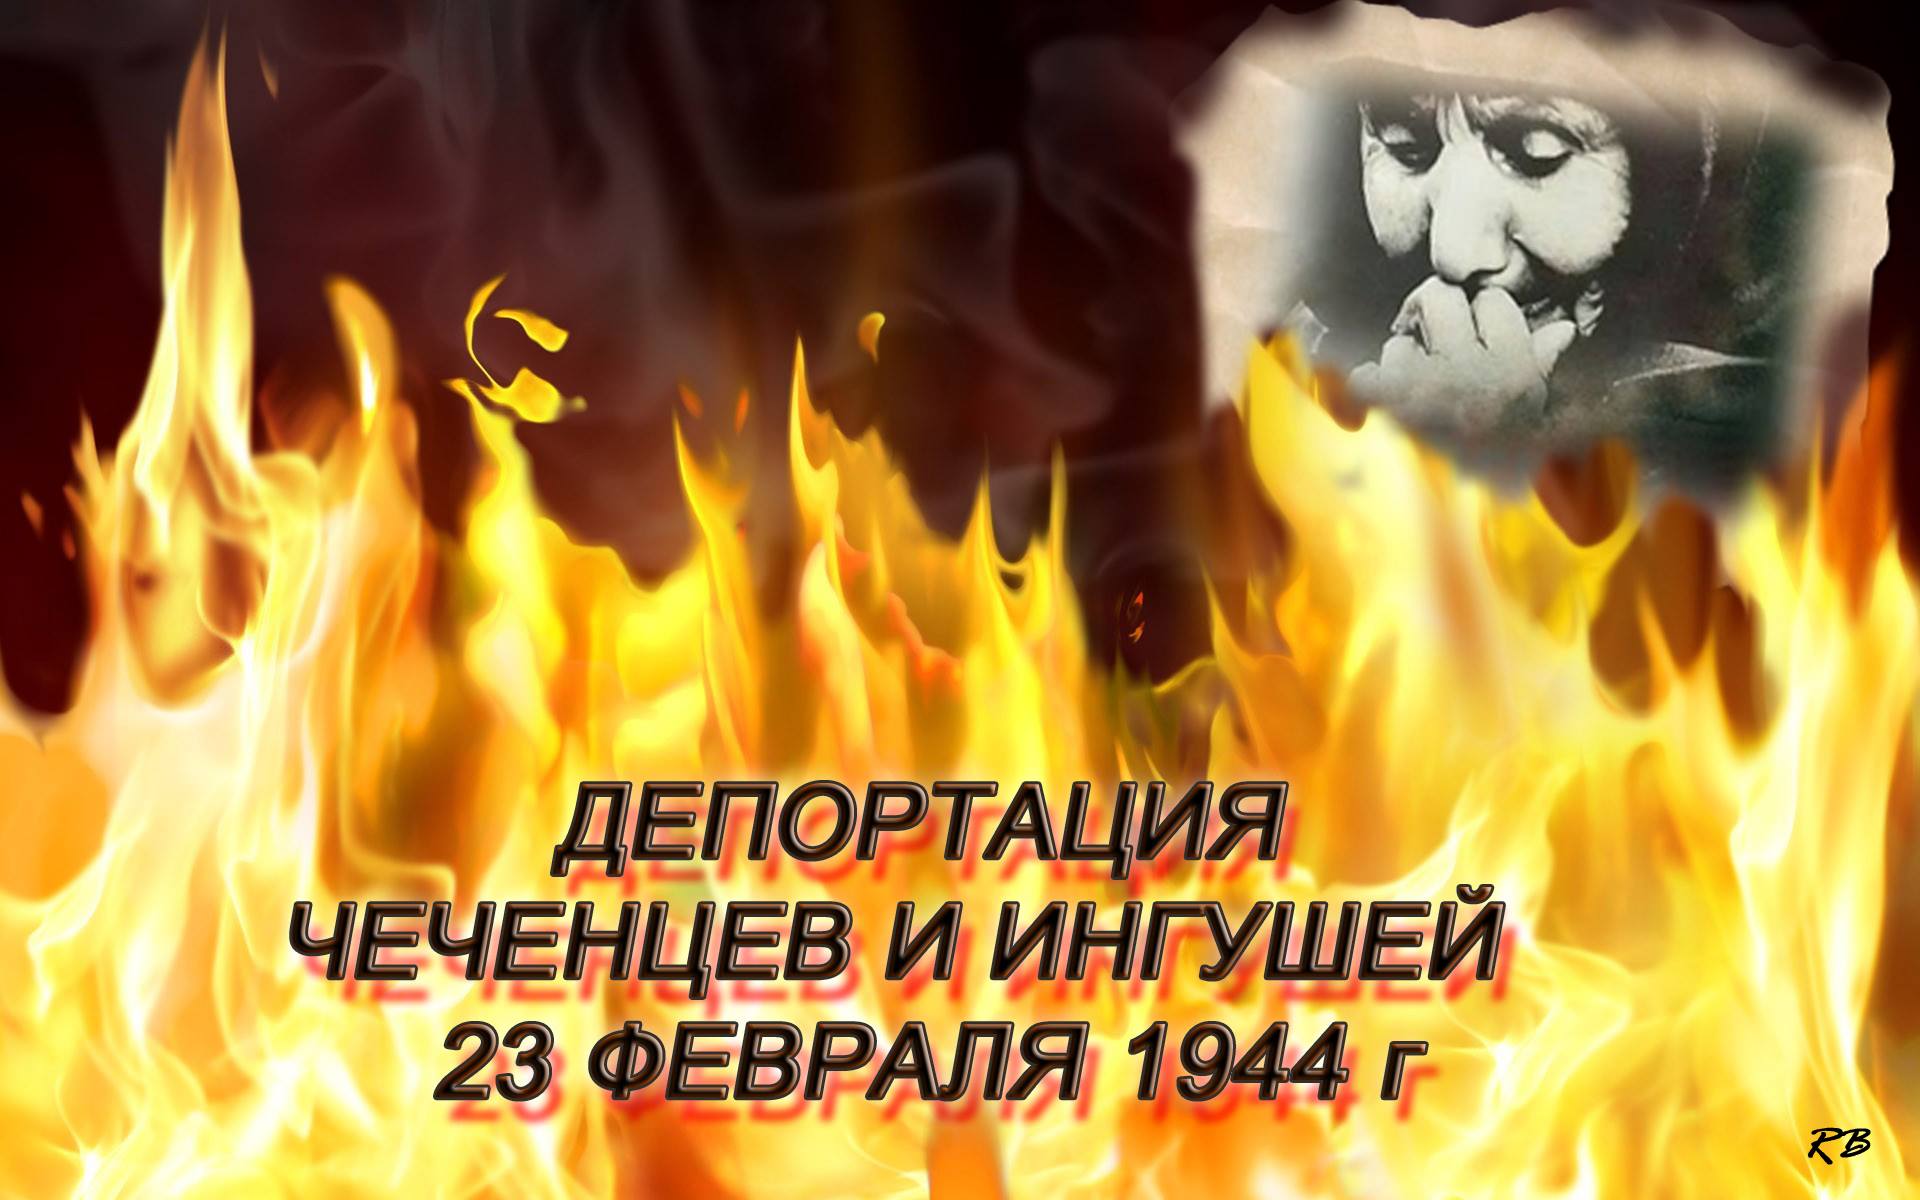 23 февраля траур у чеченцев. Депортация вайнахского народа 23 февраля 1944. 23 Февраля выселение чеченцев и ингушей в 1944 году. Депортация чеченцев и ингушей.